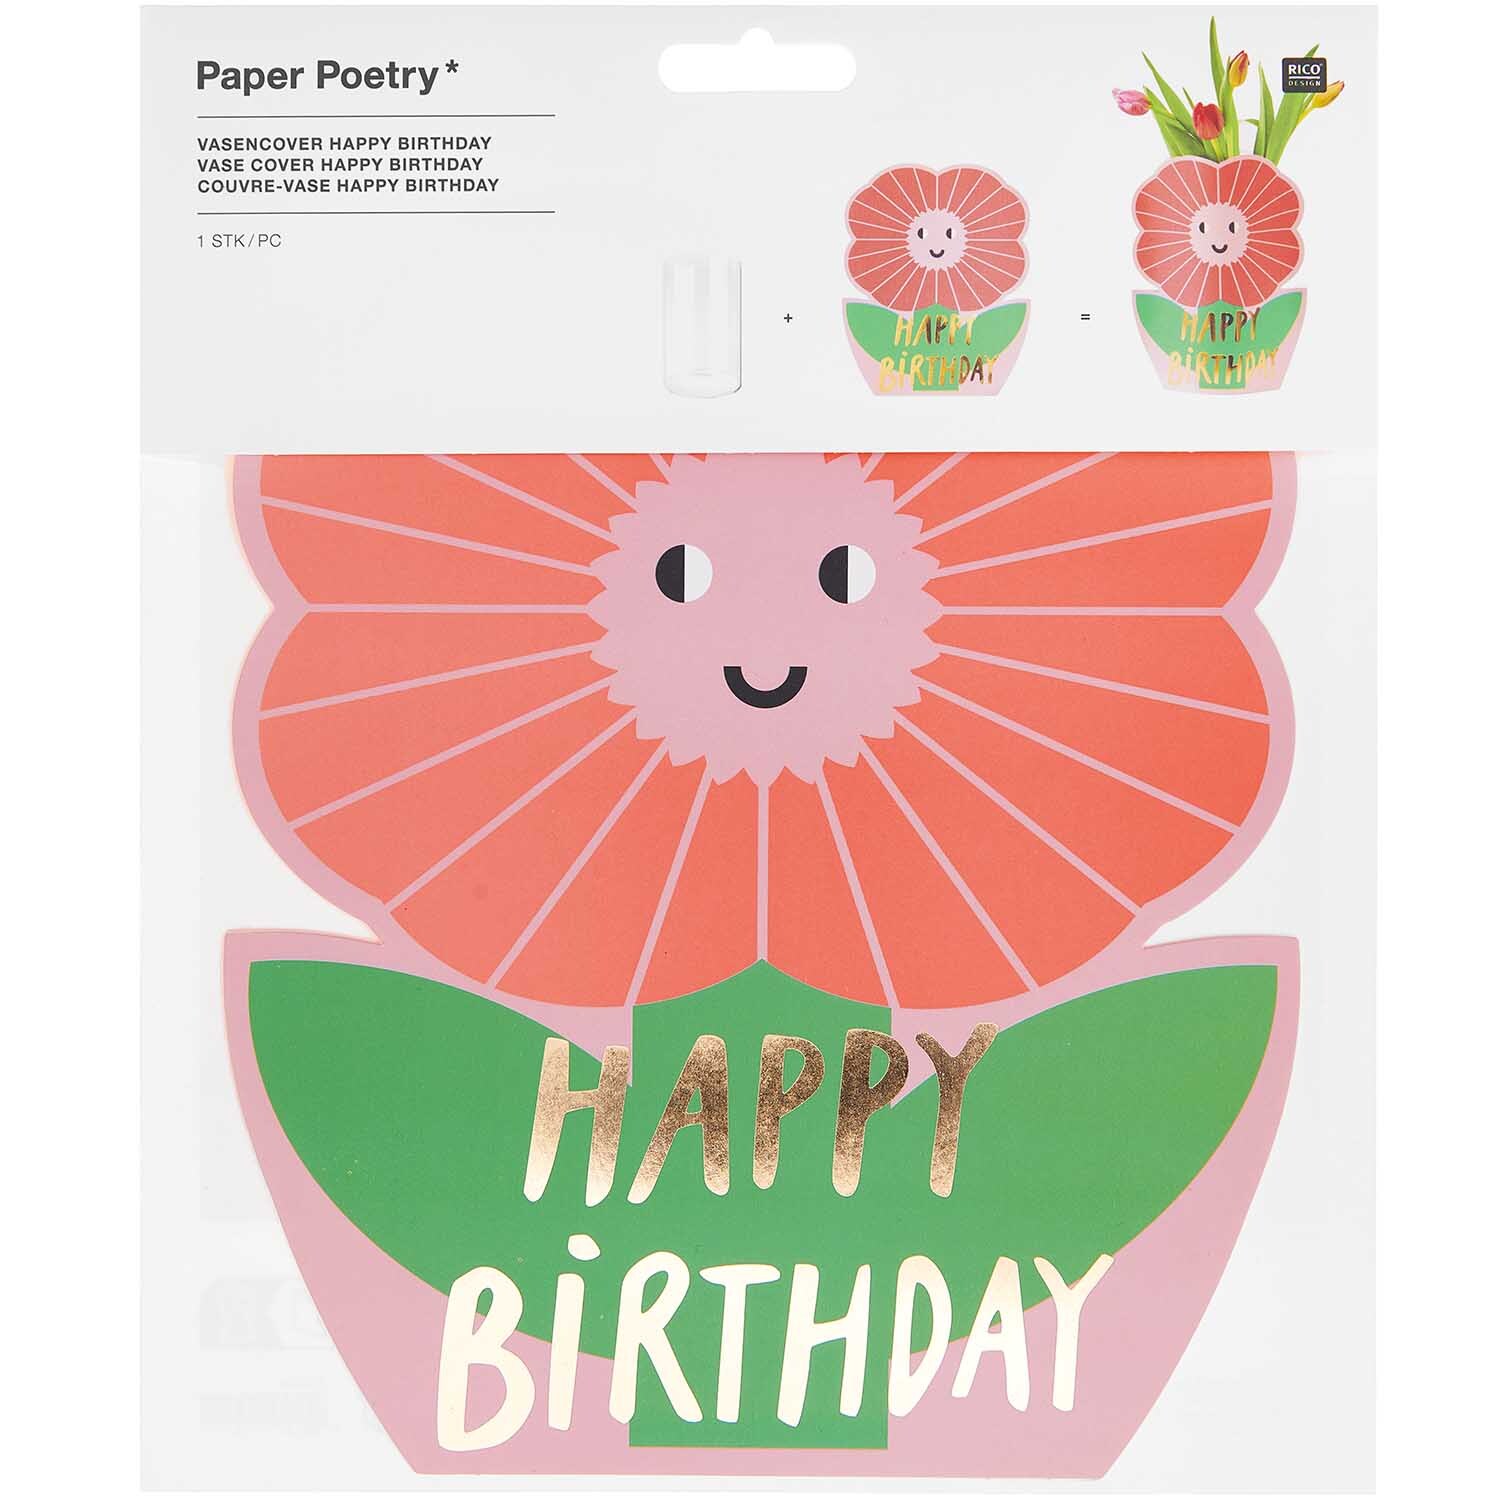 Paper Poetry Vasencover Happy Birthday 19x23cm